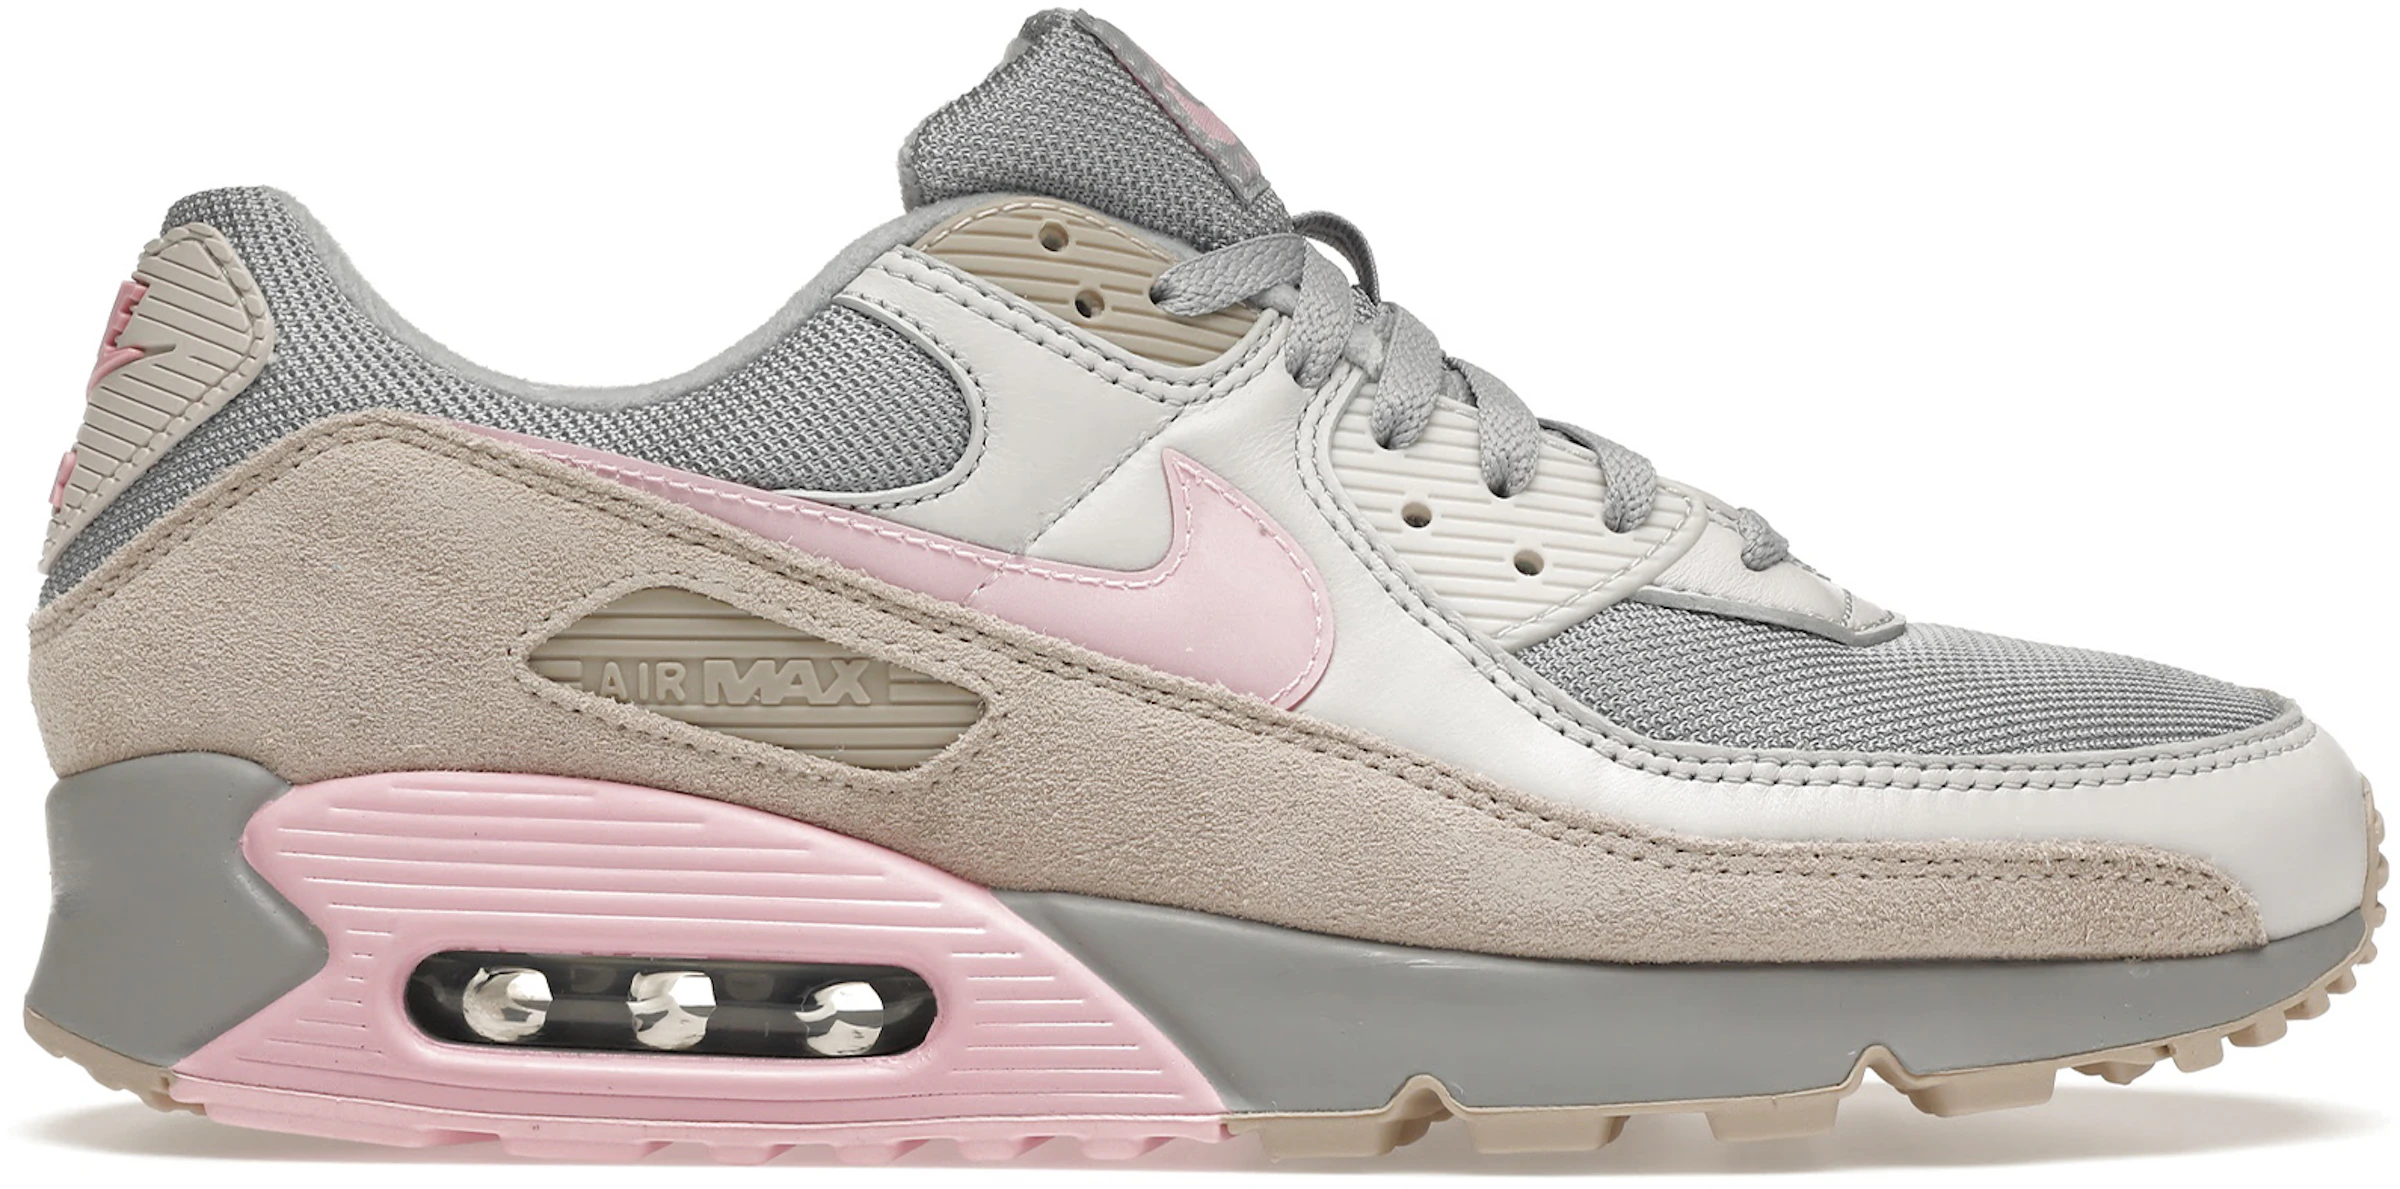 En Vivo entusiasta traición Nike Air Max 90 Vast Grey Pink - CW7483-001 - ES